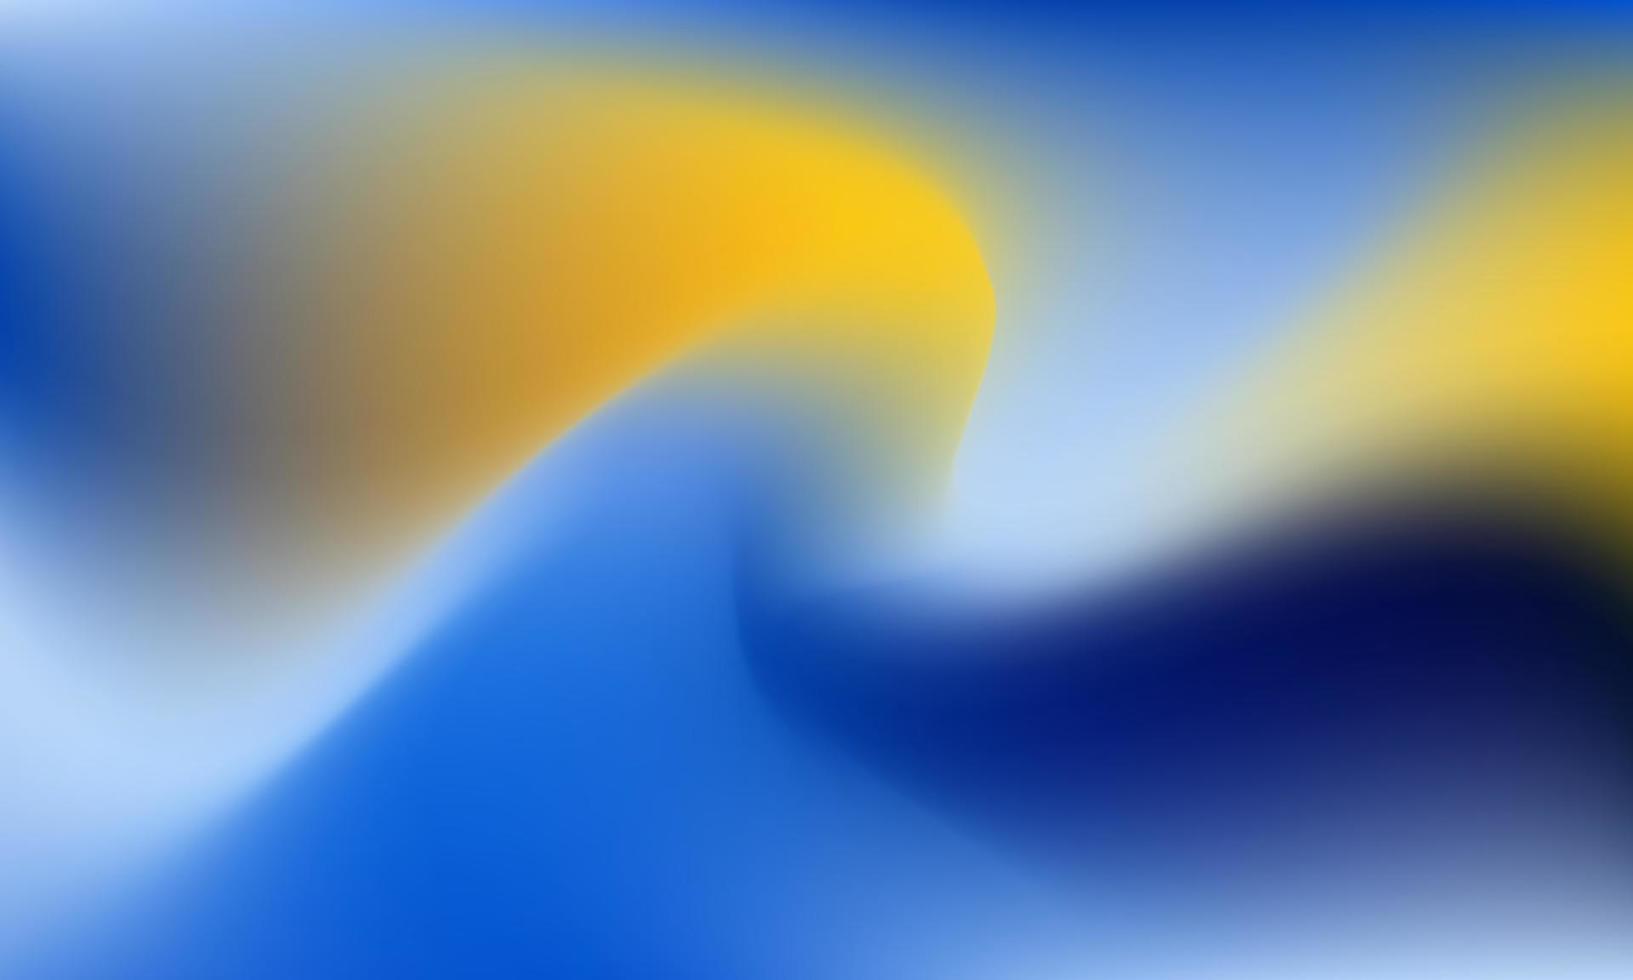 abstrakt verschwommen Gradient Gittergewebe Hintergrund Vektor. modern glatt Design Vorlage mit Sanft Blau, Gelb, schwarz Farben Mischung. vektor